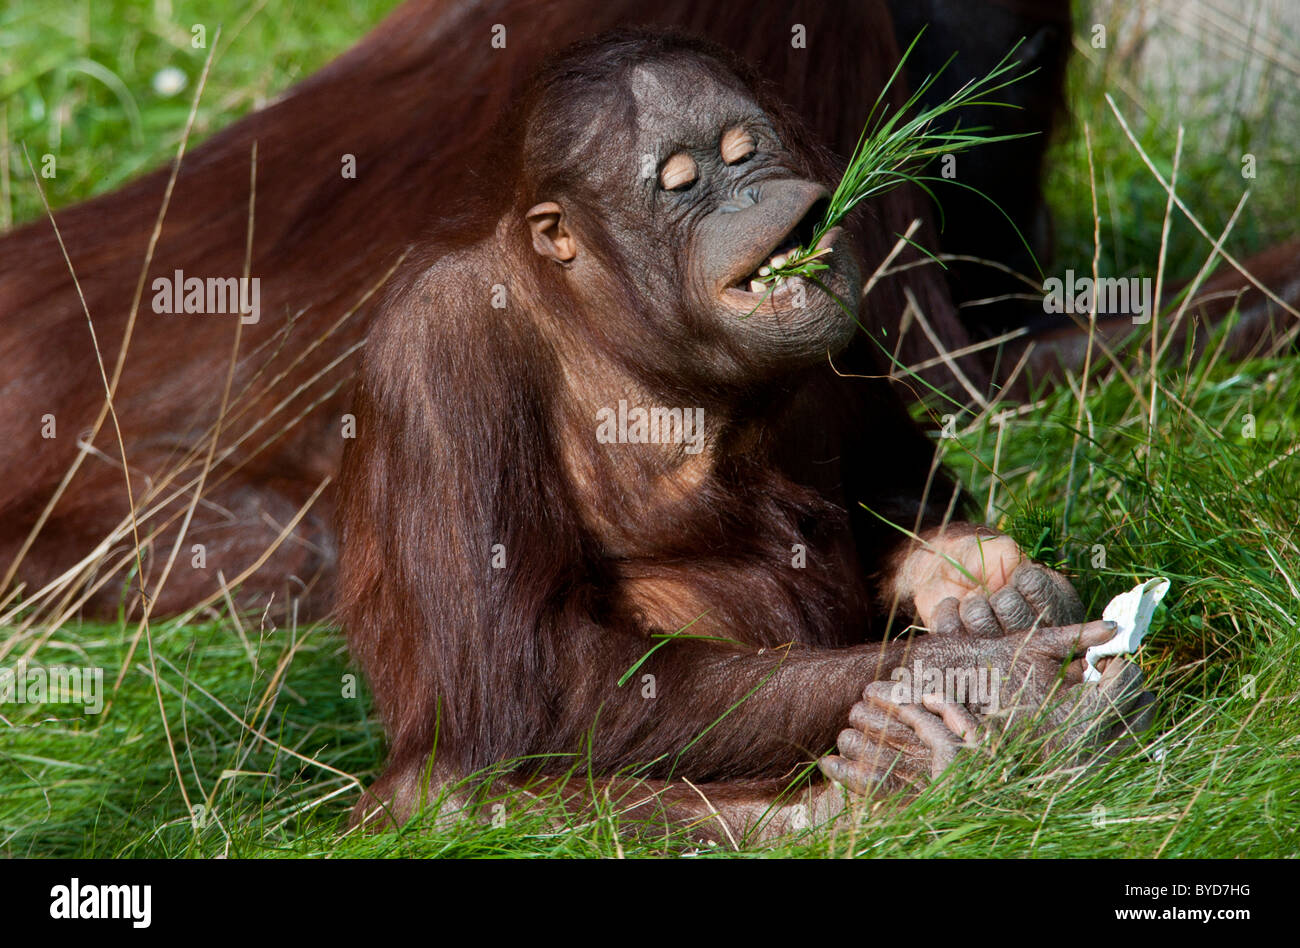 Les orangs-outans (Pongo pygmaeus), mâcher de touffes d'herbe Banque D'Images